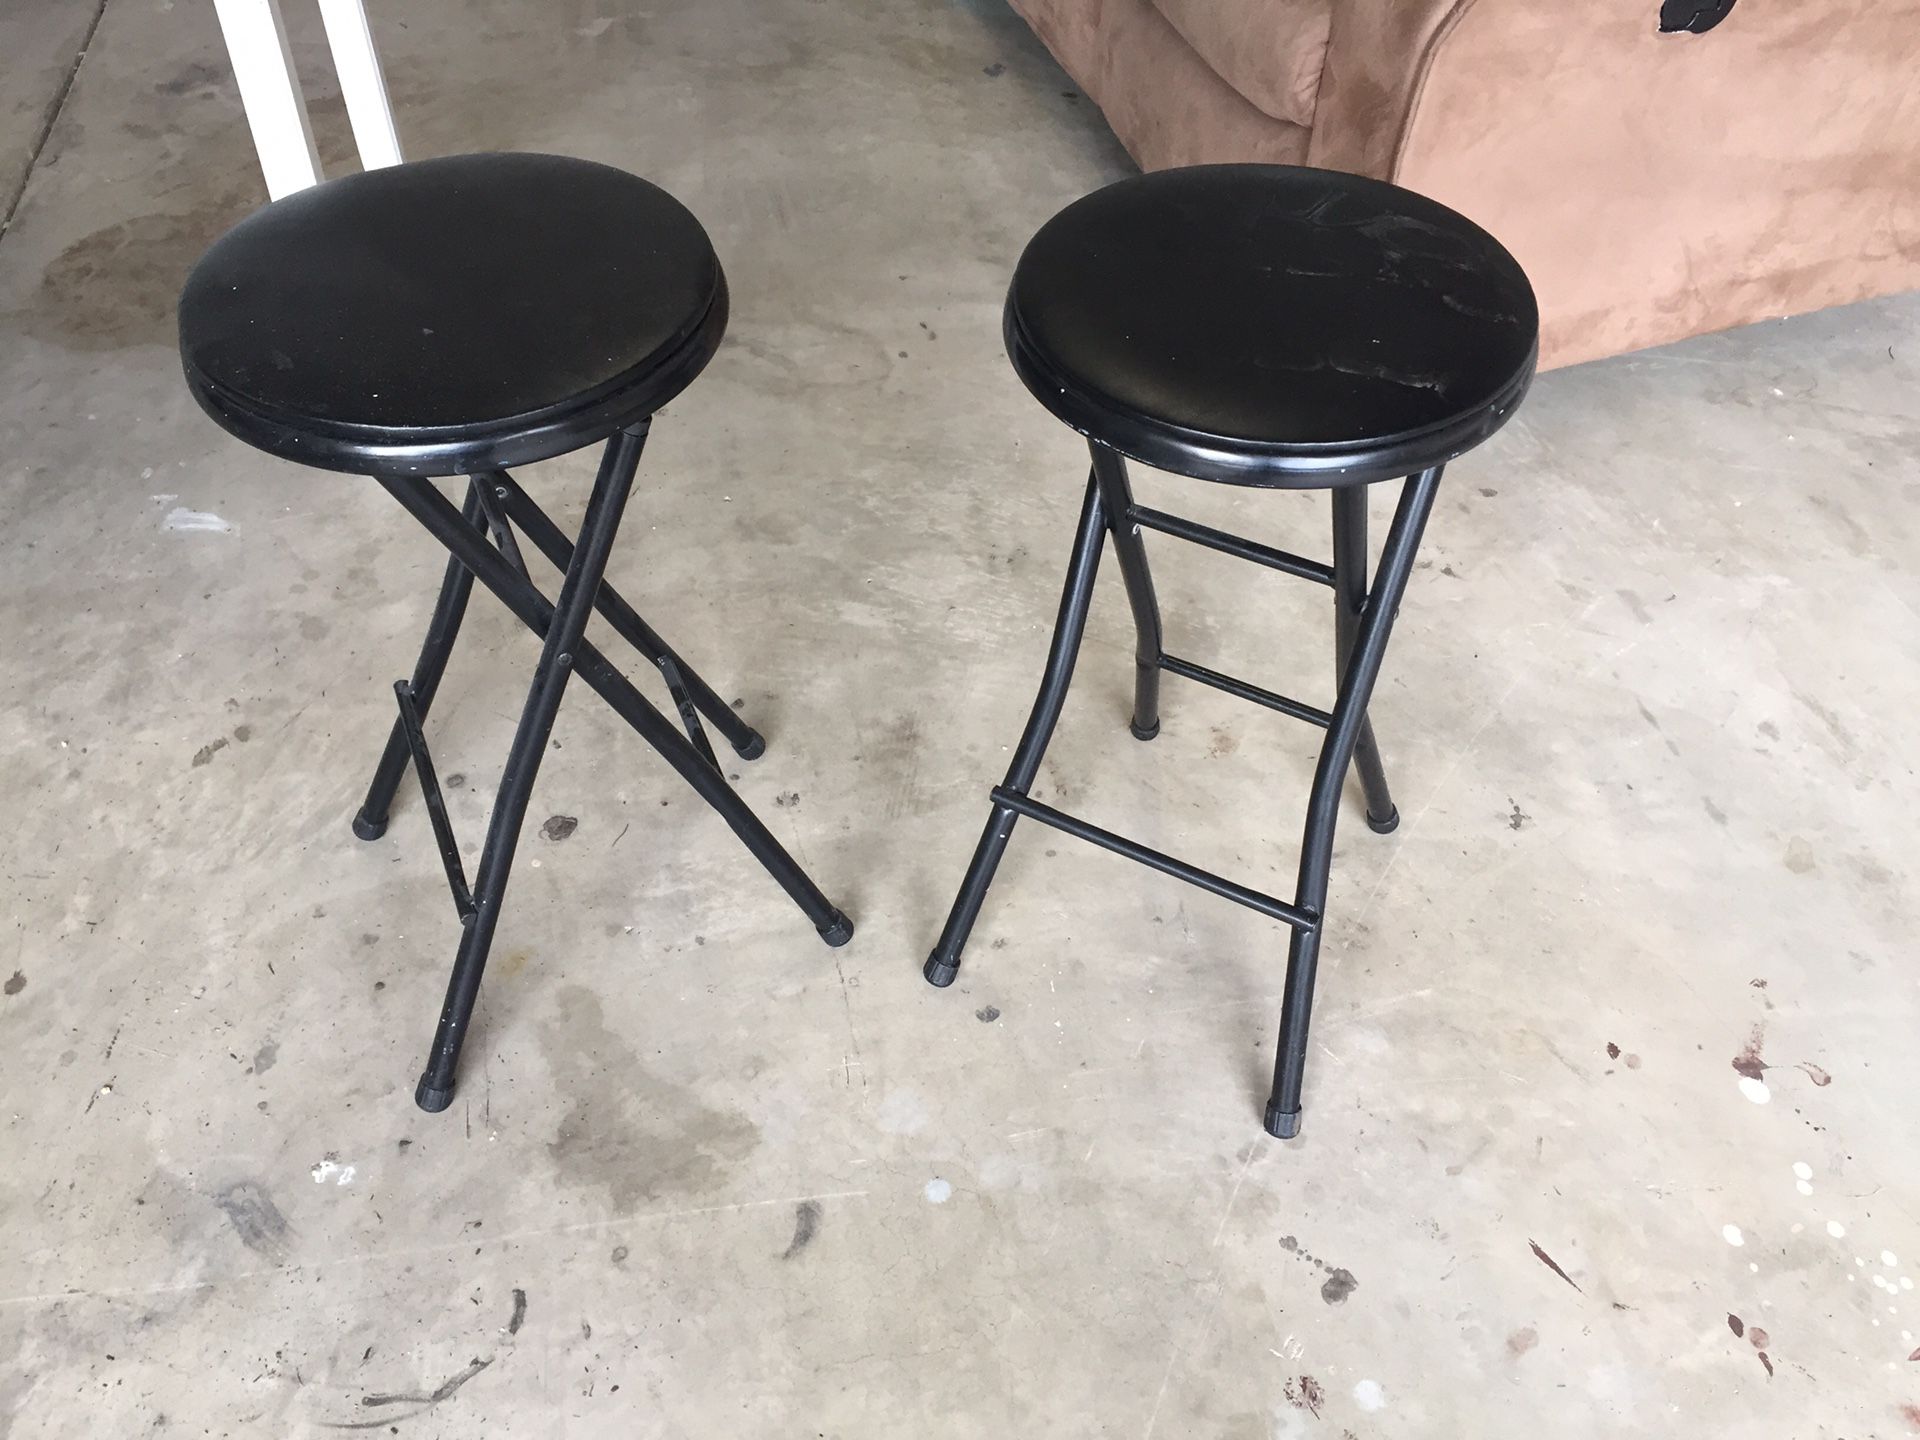 Black stools